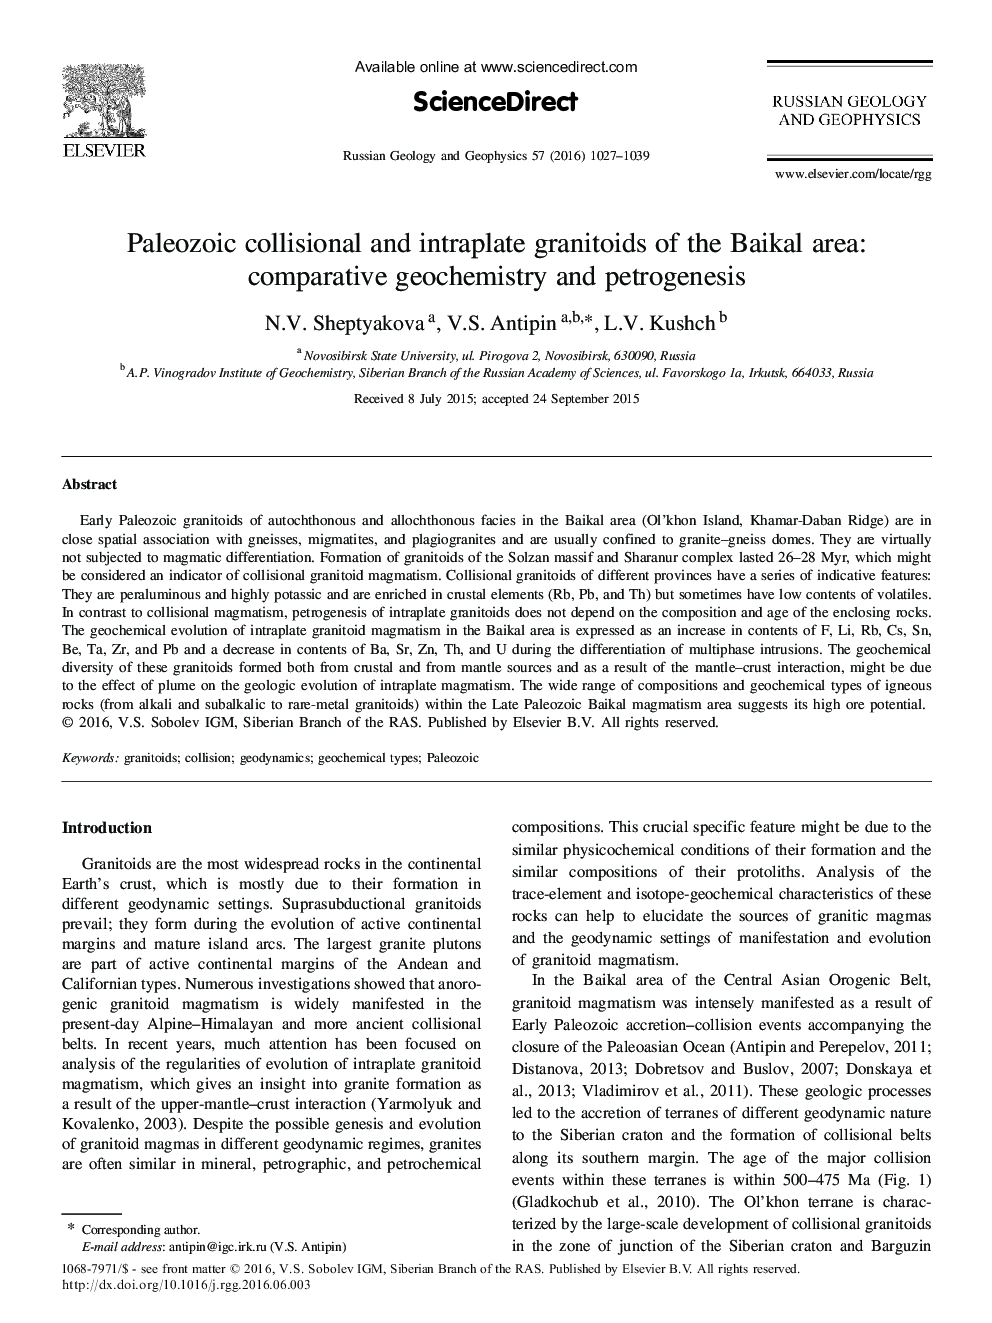 گرانیتوئیدهای تصادفی و داخل وریدی پالئوزوئیک منطقه بیکال: ژئوشیمیایی و پتروژنز مقایسه 